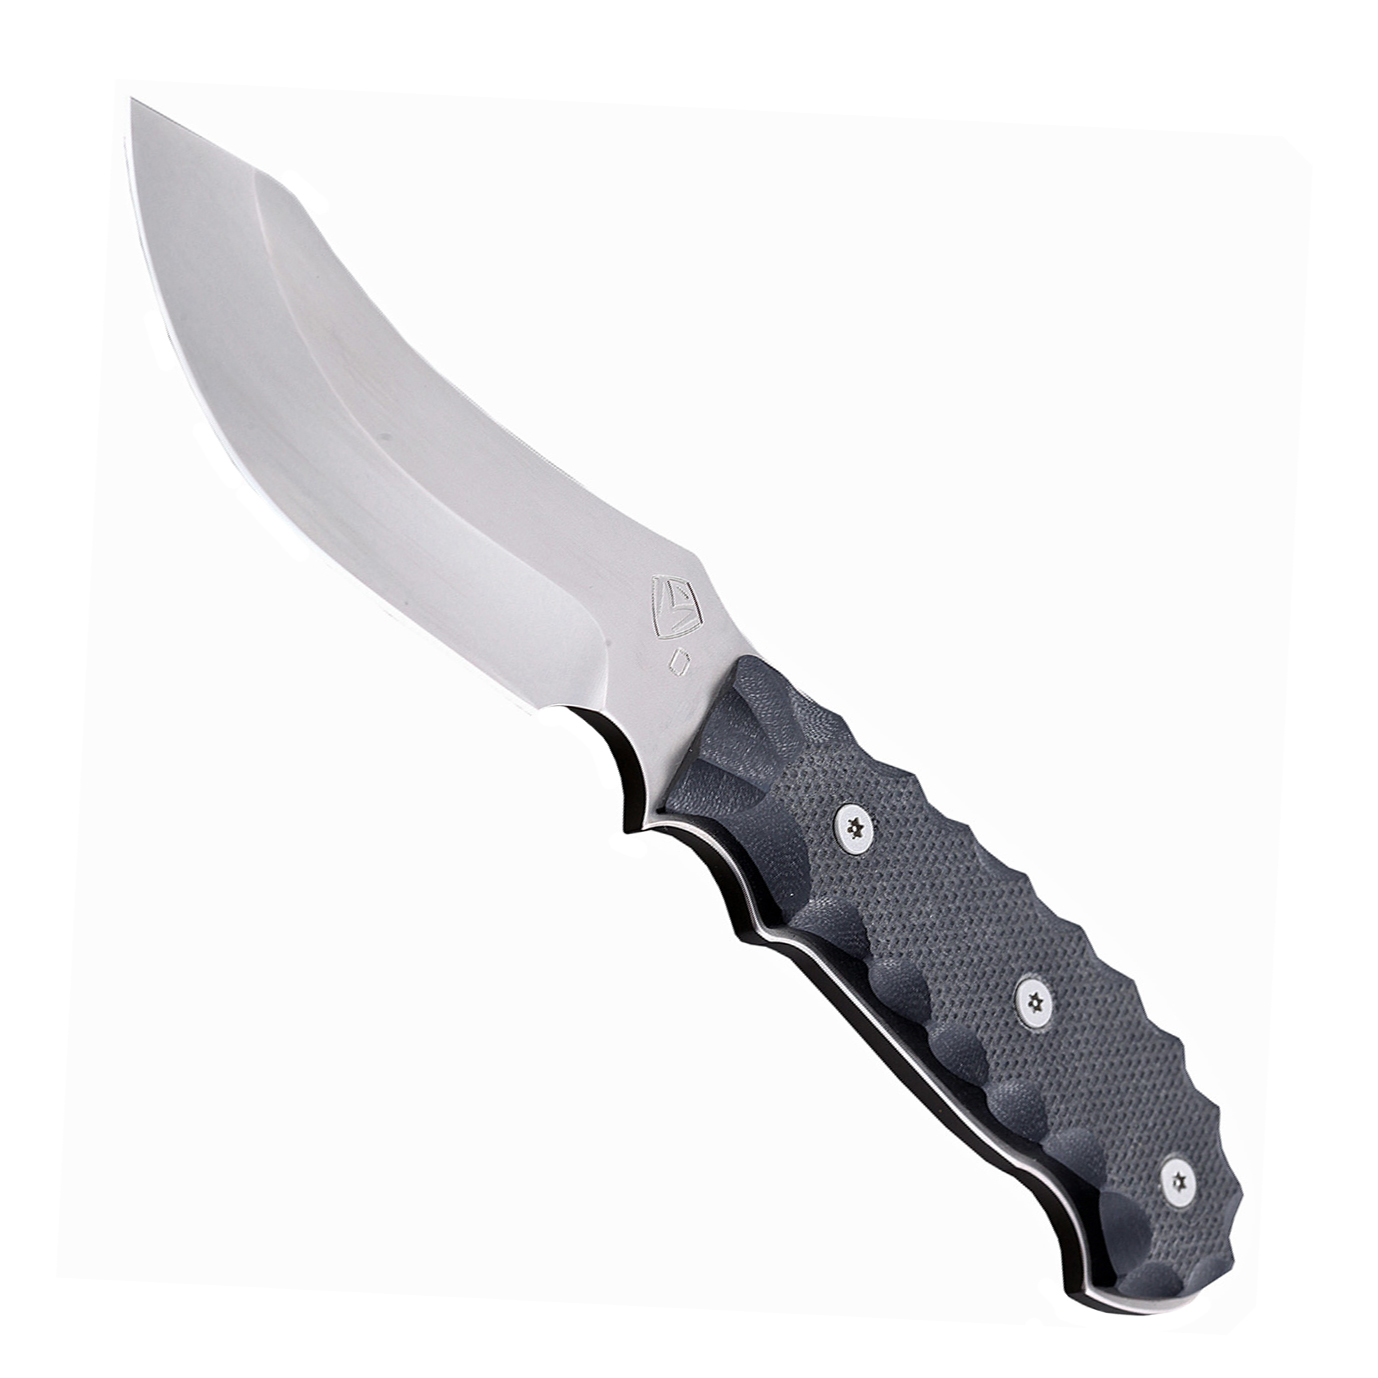 Нож шкуросъемный с фиксированным клинком Medford Elk Skinner, сталь D2, рукоять стеклотекстолит G-10 от Ножиков